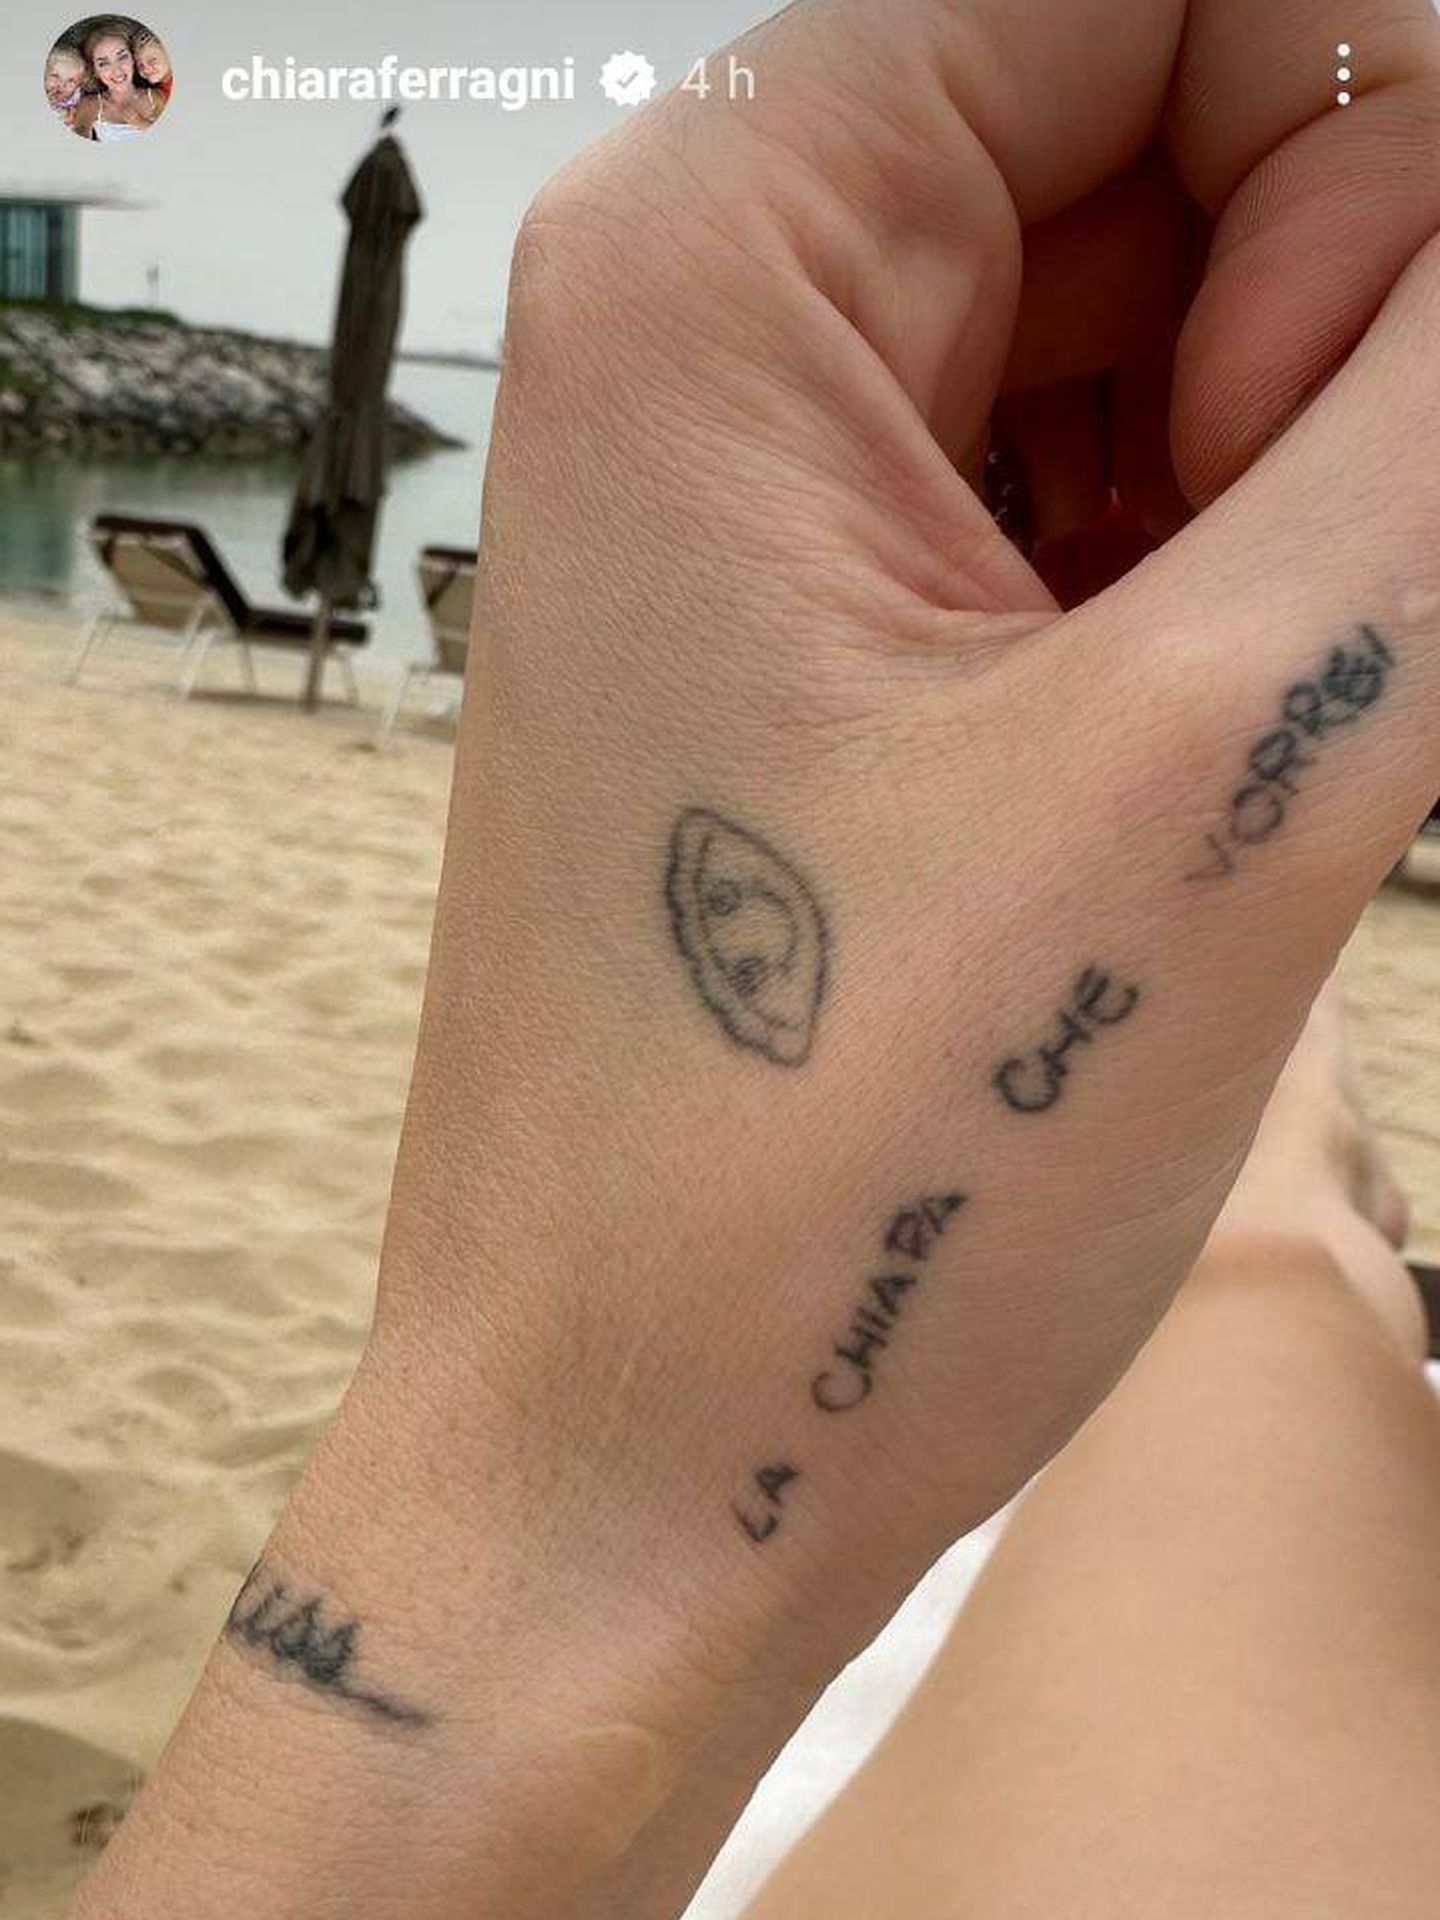 Tatuajes de la mano de la influencer. (Instagram/@chiaraferragni)